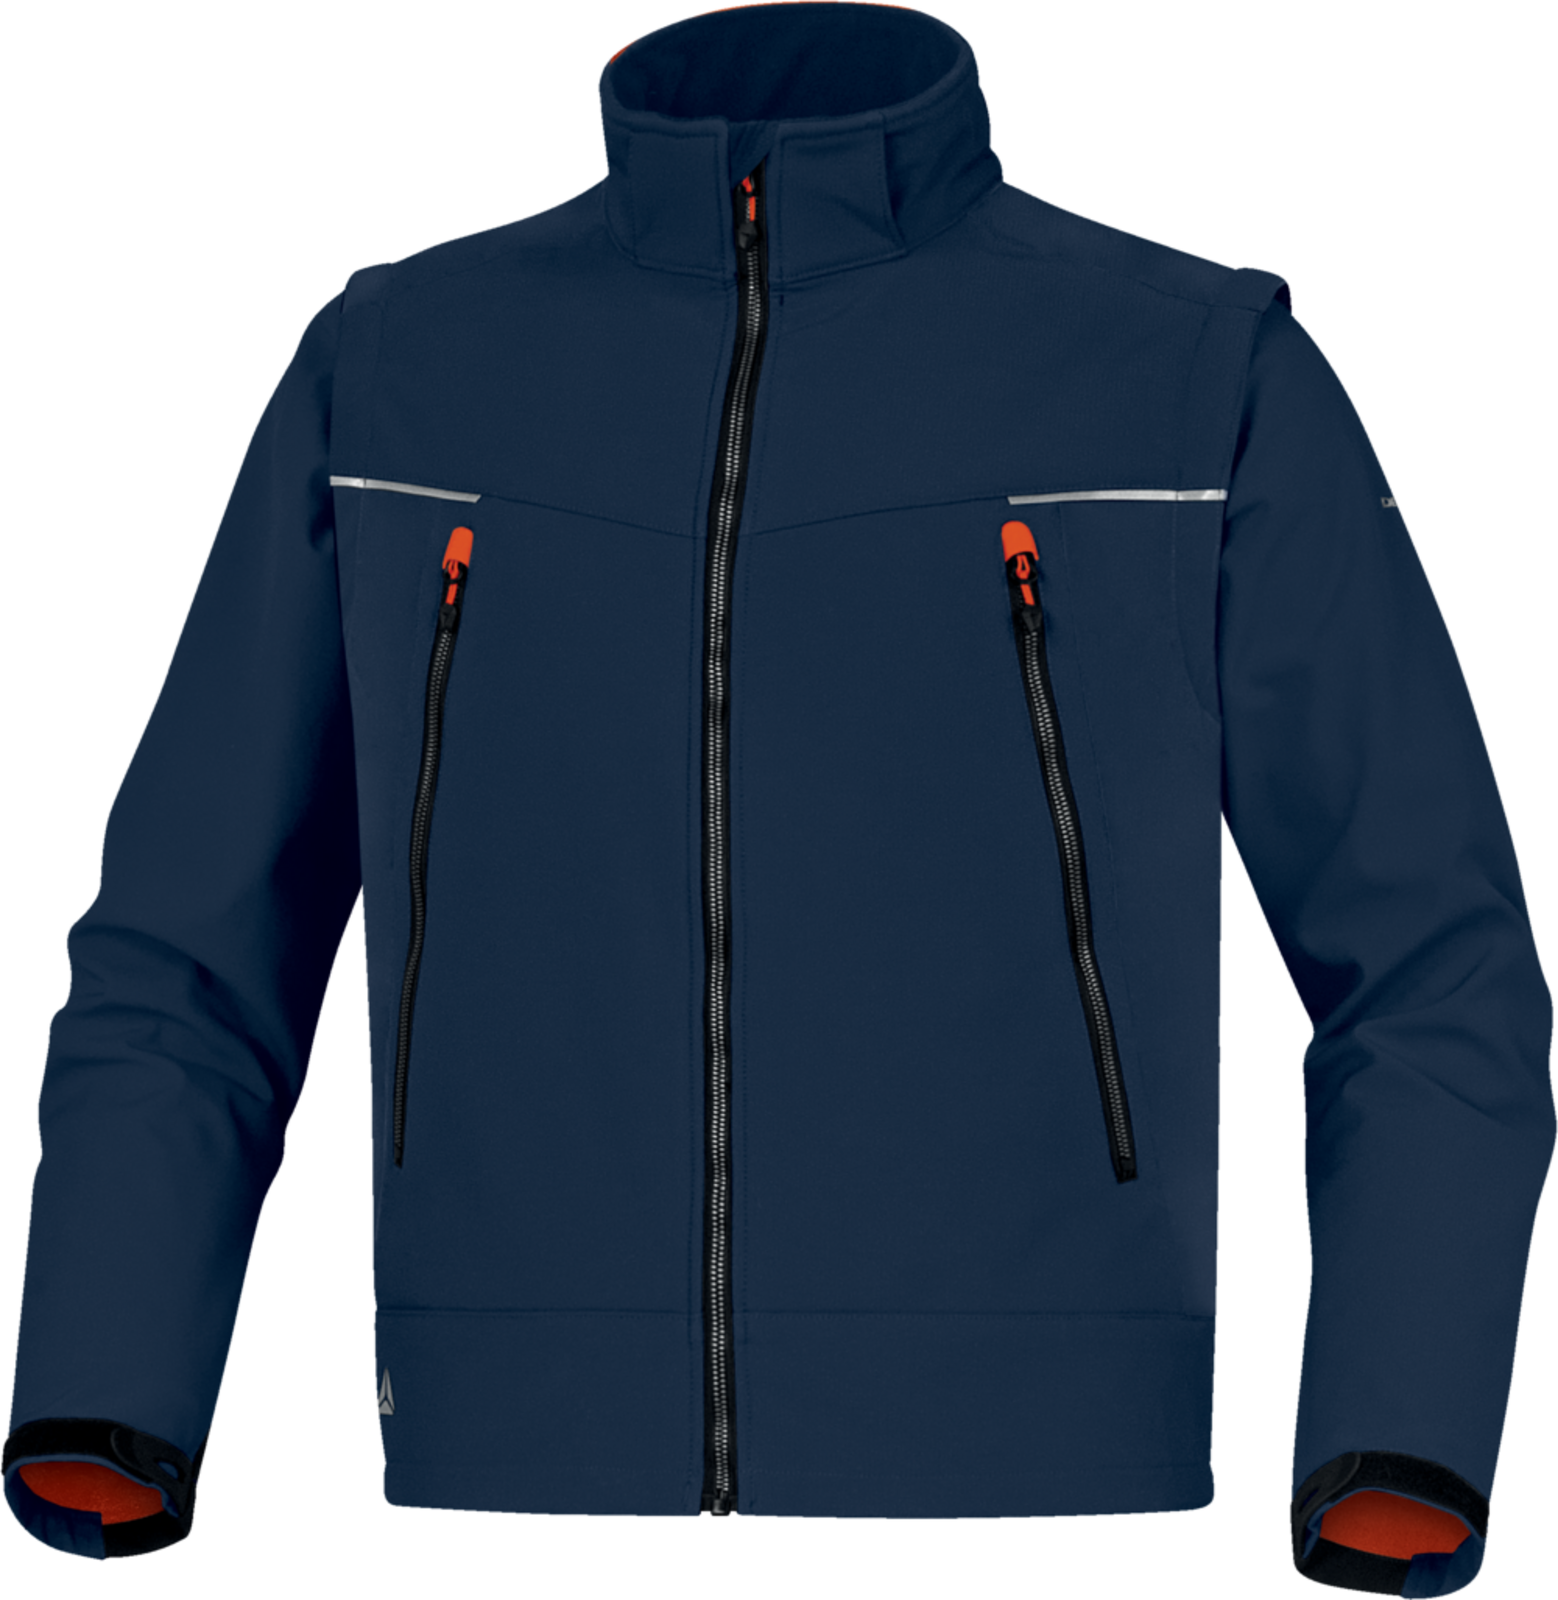 Softshellová bunda Delta Plus Orsa 2v1 - veľkosť: L, farba: námornícka modrá/oranžová